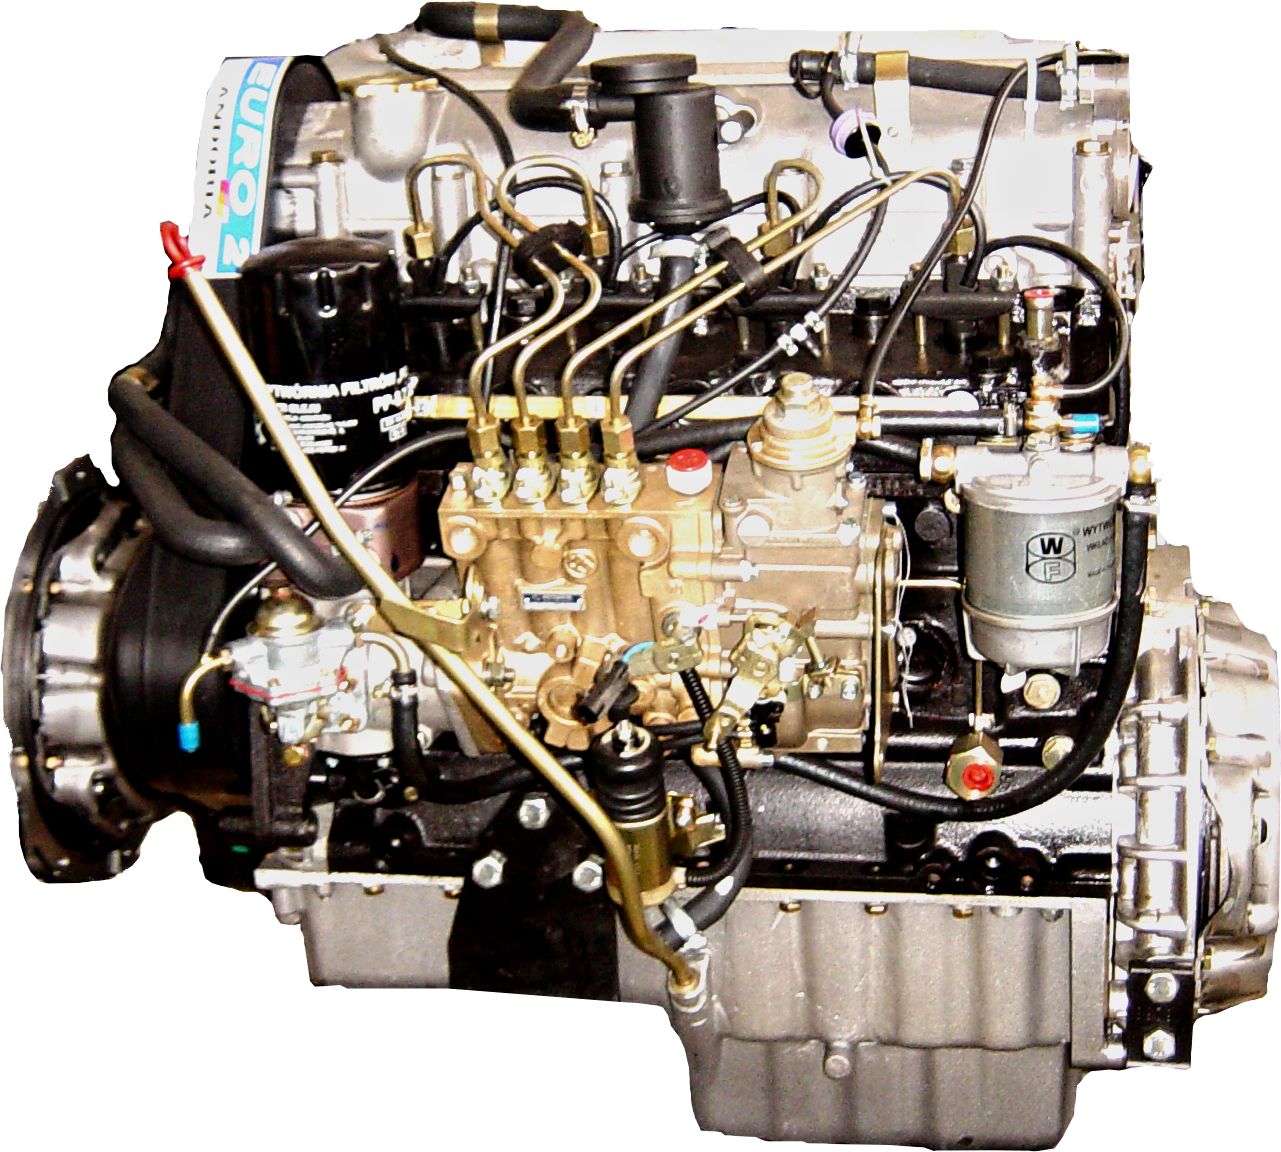 Andorijin S301D motor - sve što trebate znati o njemu